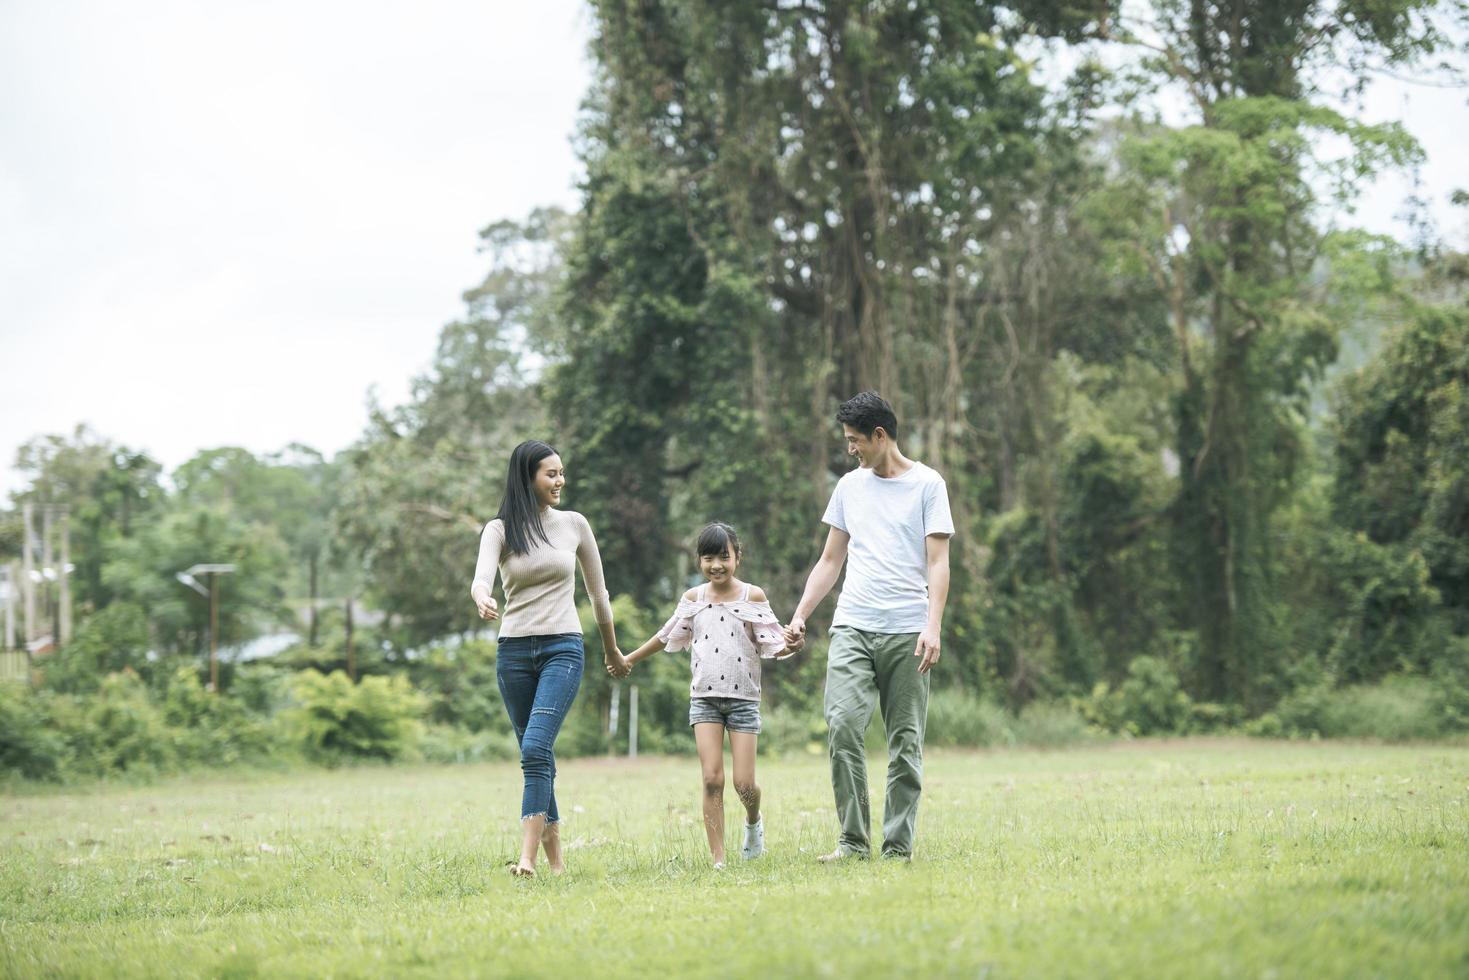 parents heureux et leur fille marchant dans le parc, concept de famille heureuse. photo